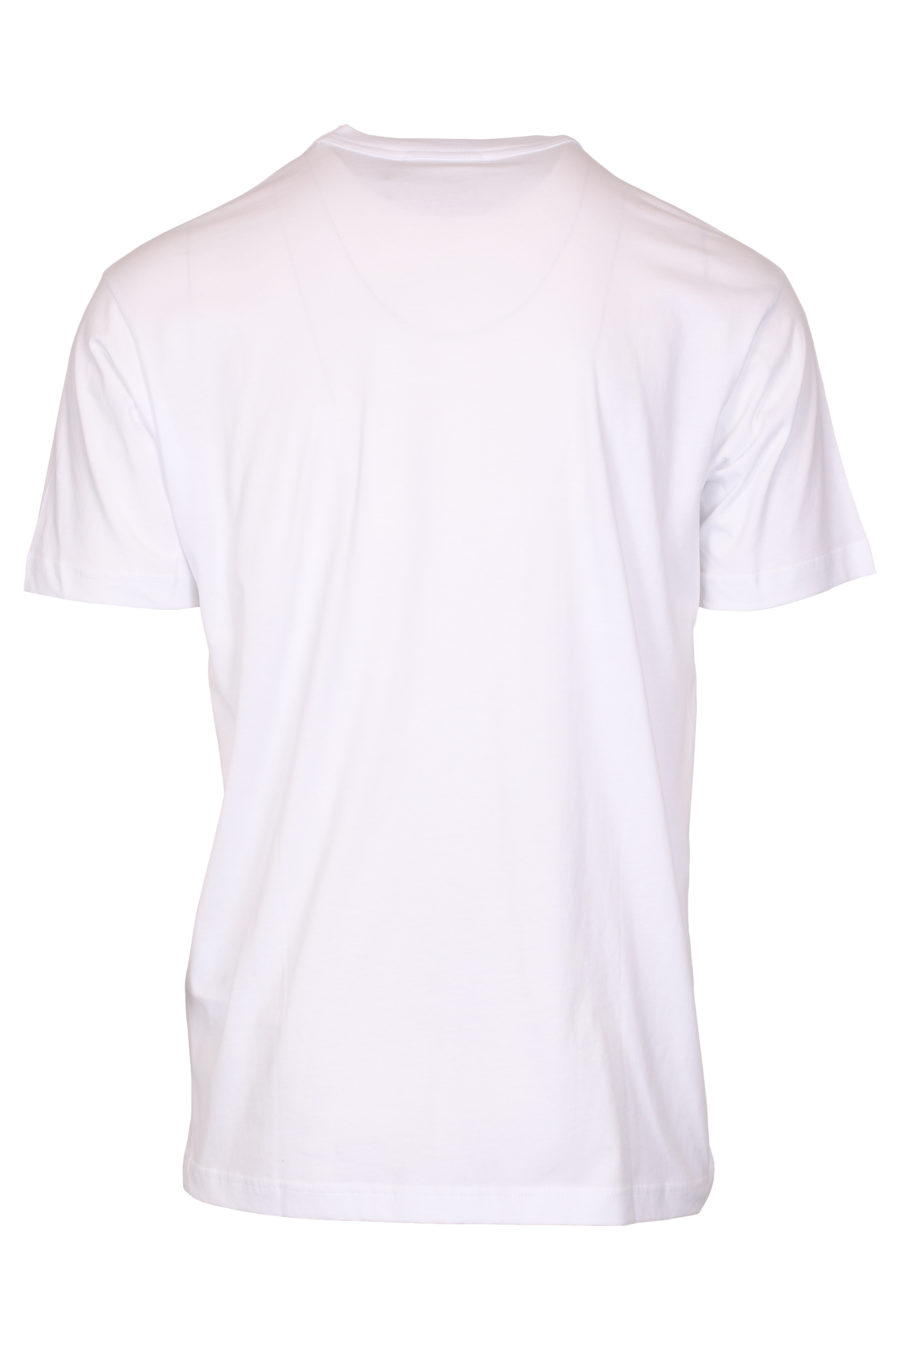 Camiseta blanca con logo código de barras - IMG 9347